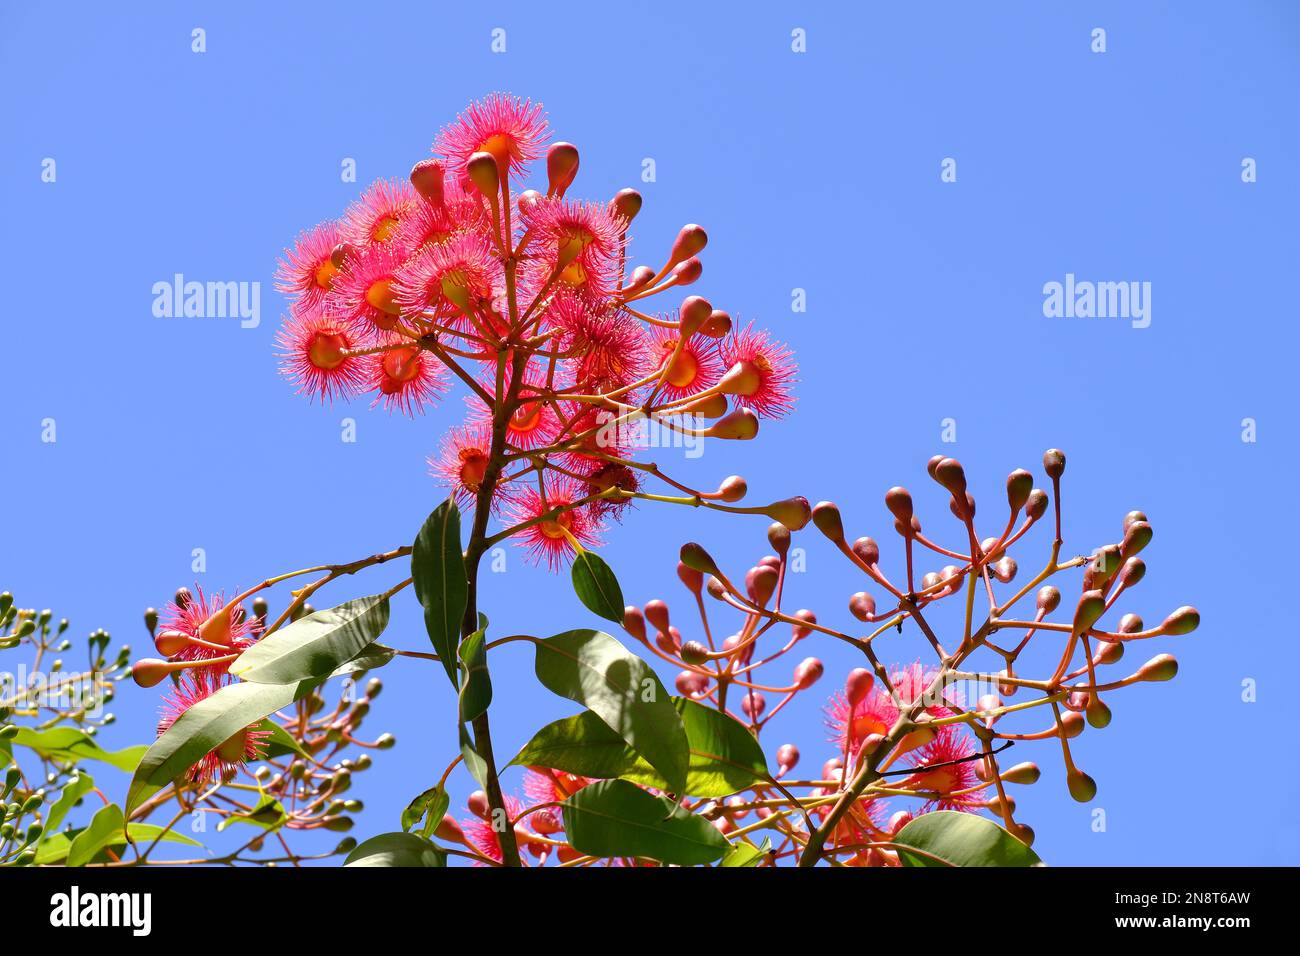 Blütengummi (Eukalyptus) Blüten, Knospen und Blätter auf dem Baum vor einem blauen Himmel in Perth, Westaustralien Stockfoto